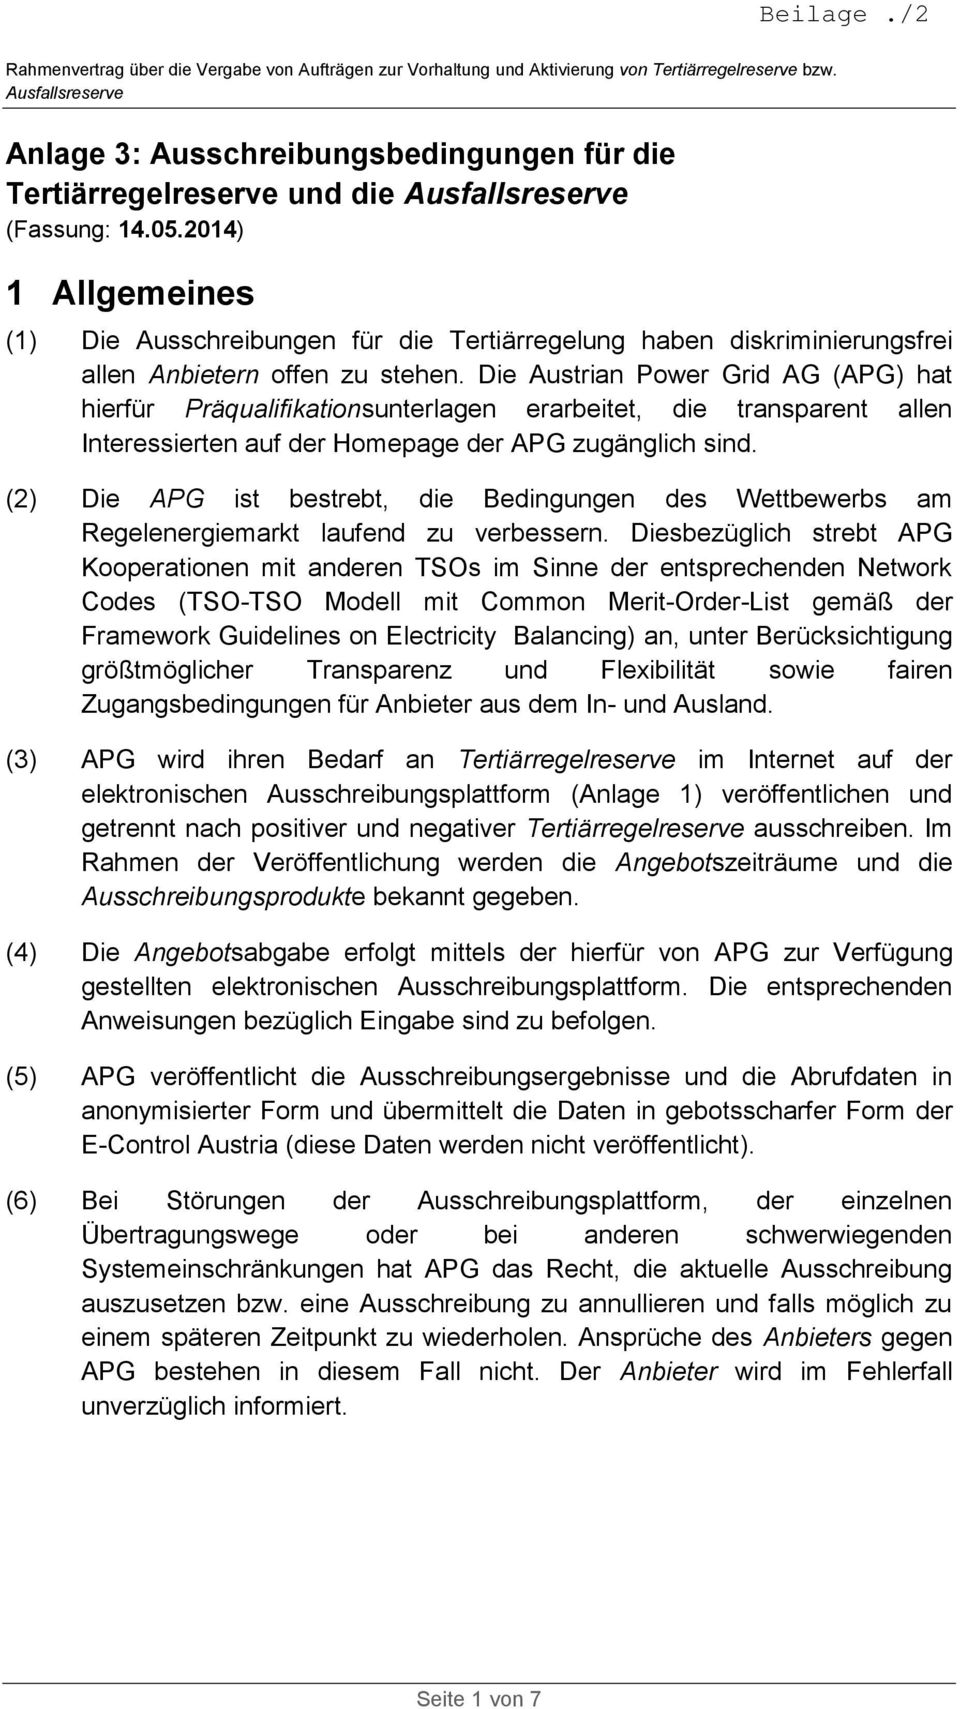 Die Austrian Power Grid AG (APG) hat hierfür Präqualifikationsunterlagen erarbeitet, die transparent allen Interessierten auf der Homepage der APG zugänglich sind.